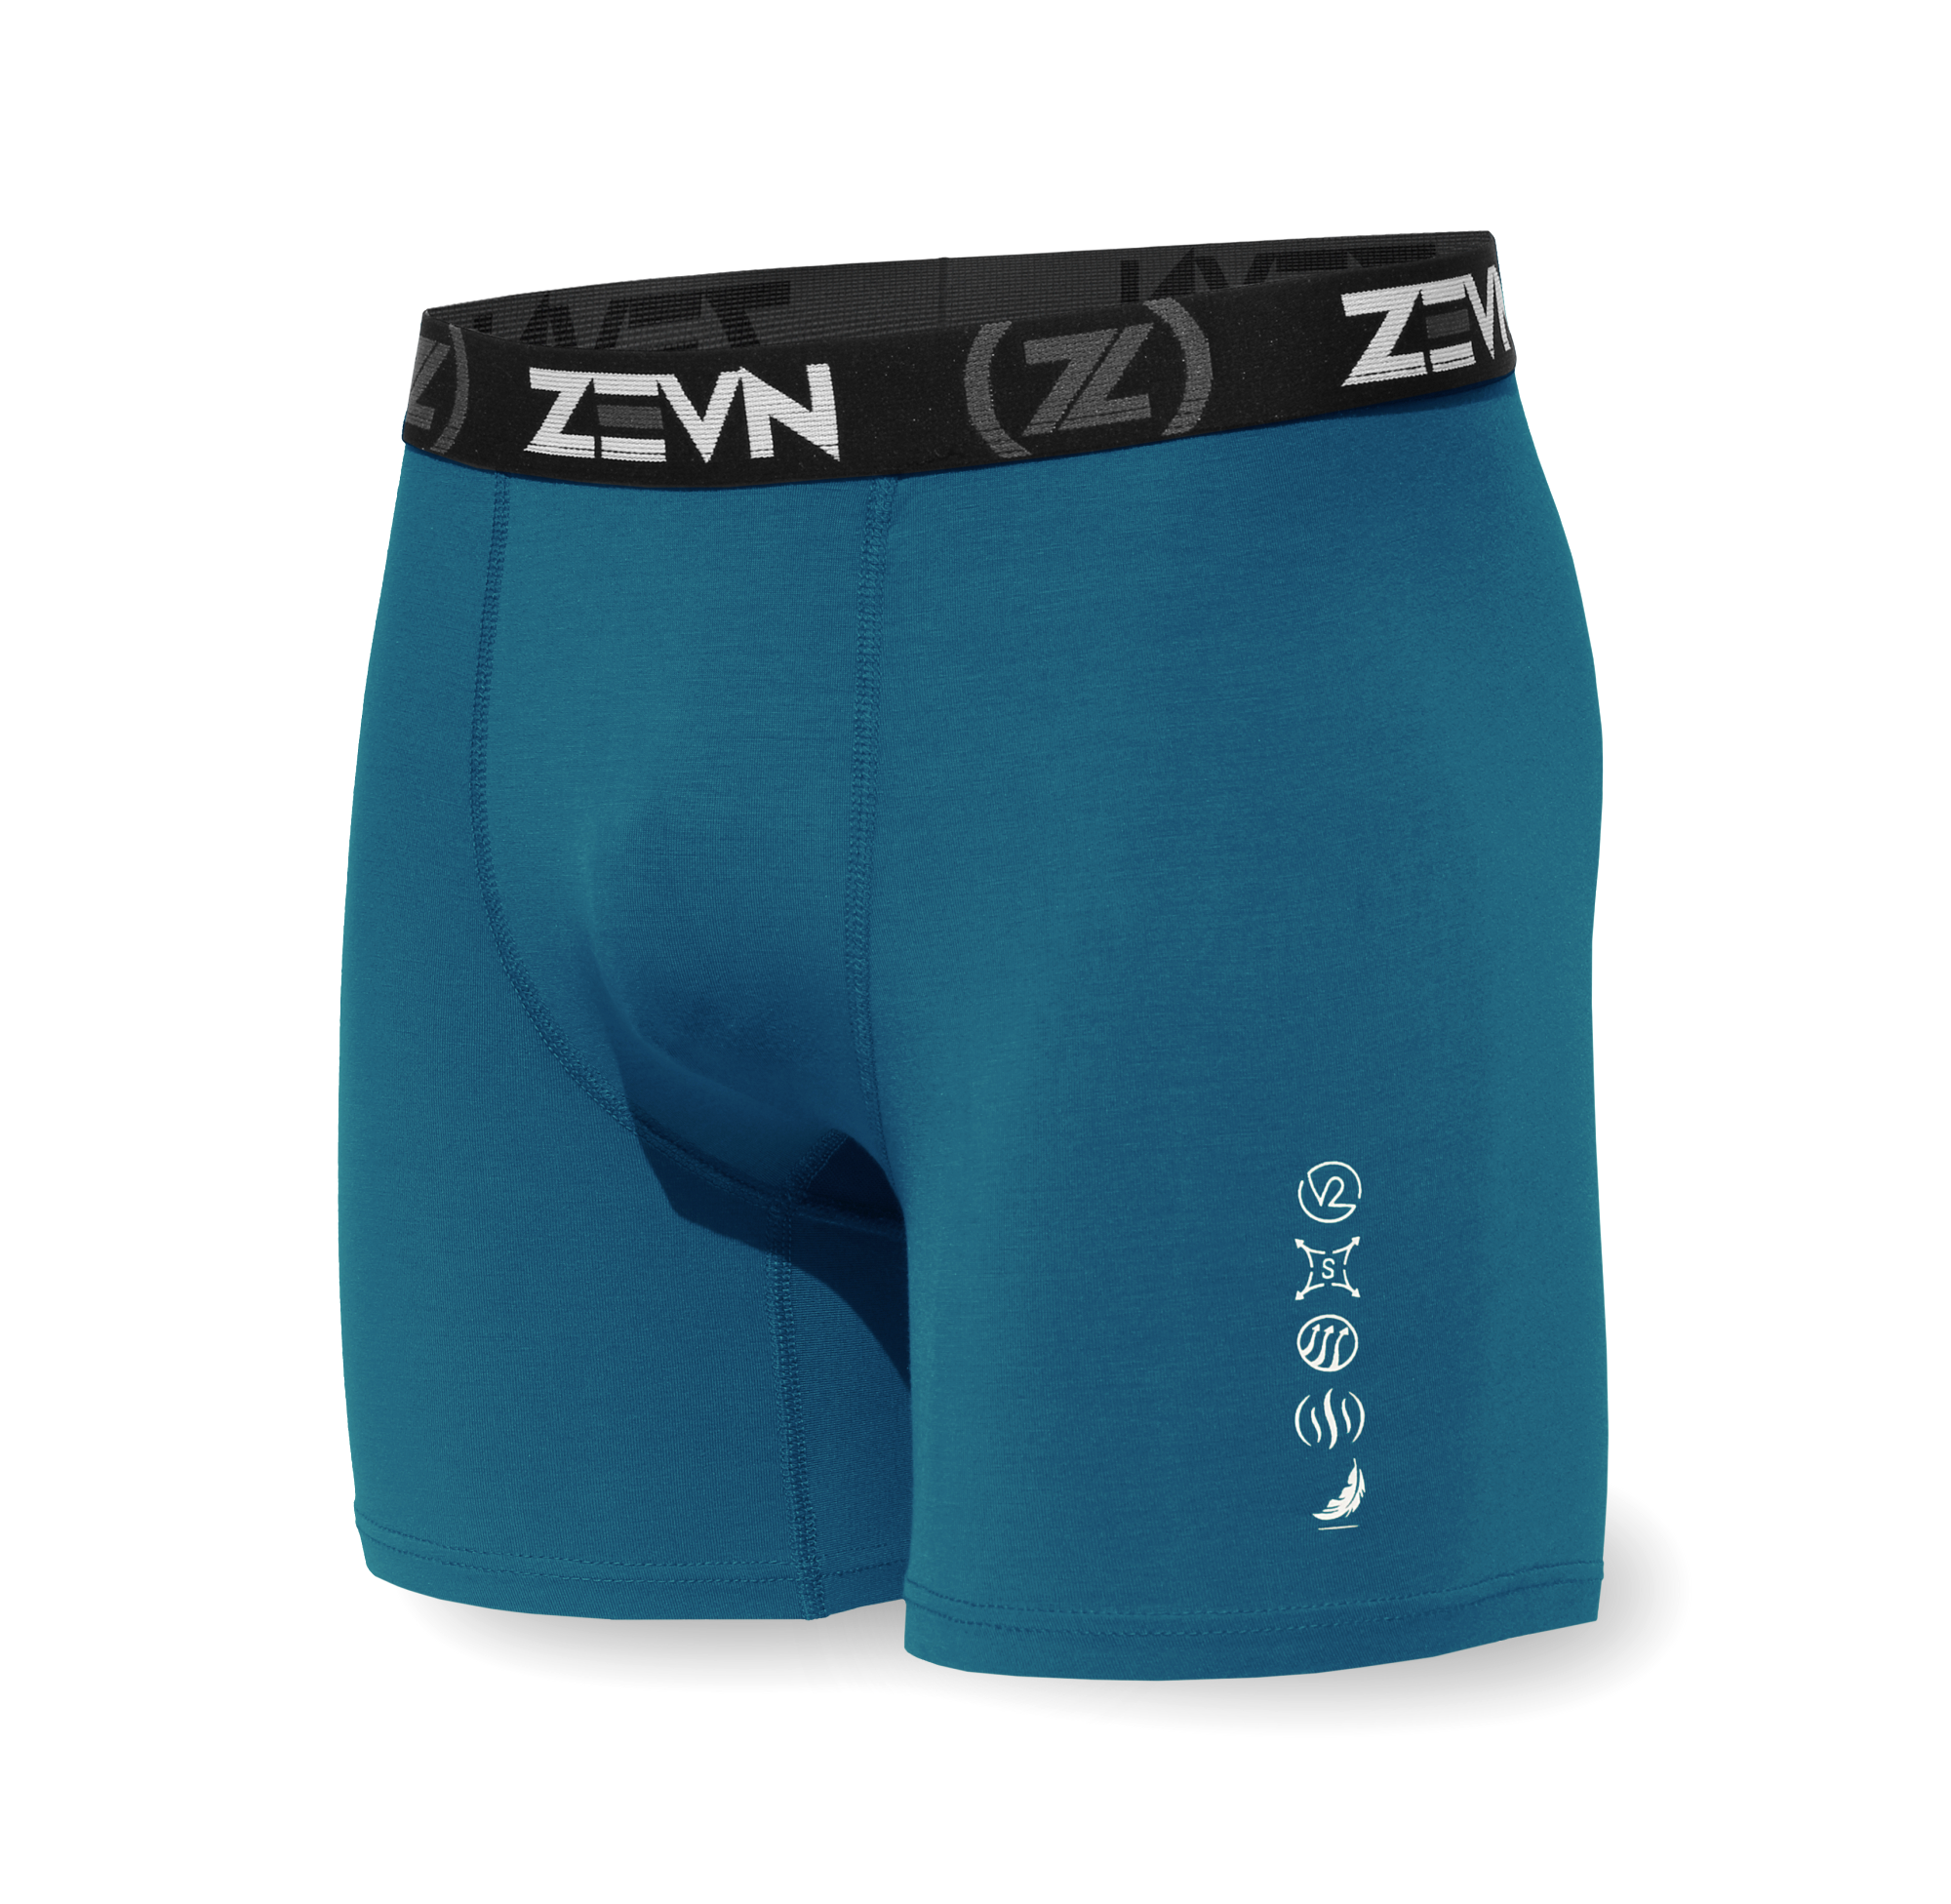 Zevn Boys Everyday V2 - Athletic Boys Underwear – ZEVN USA Sports 